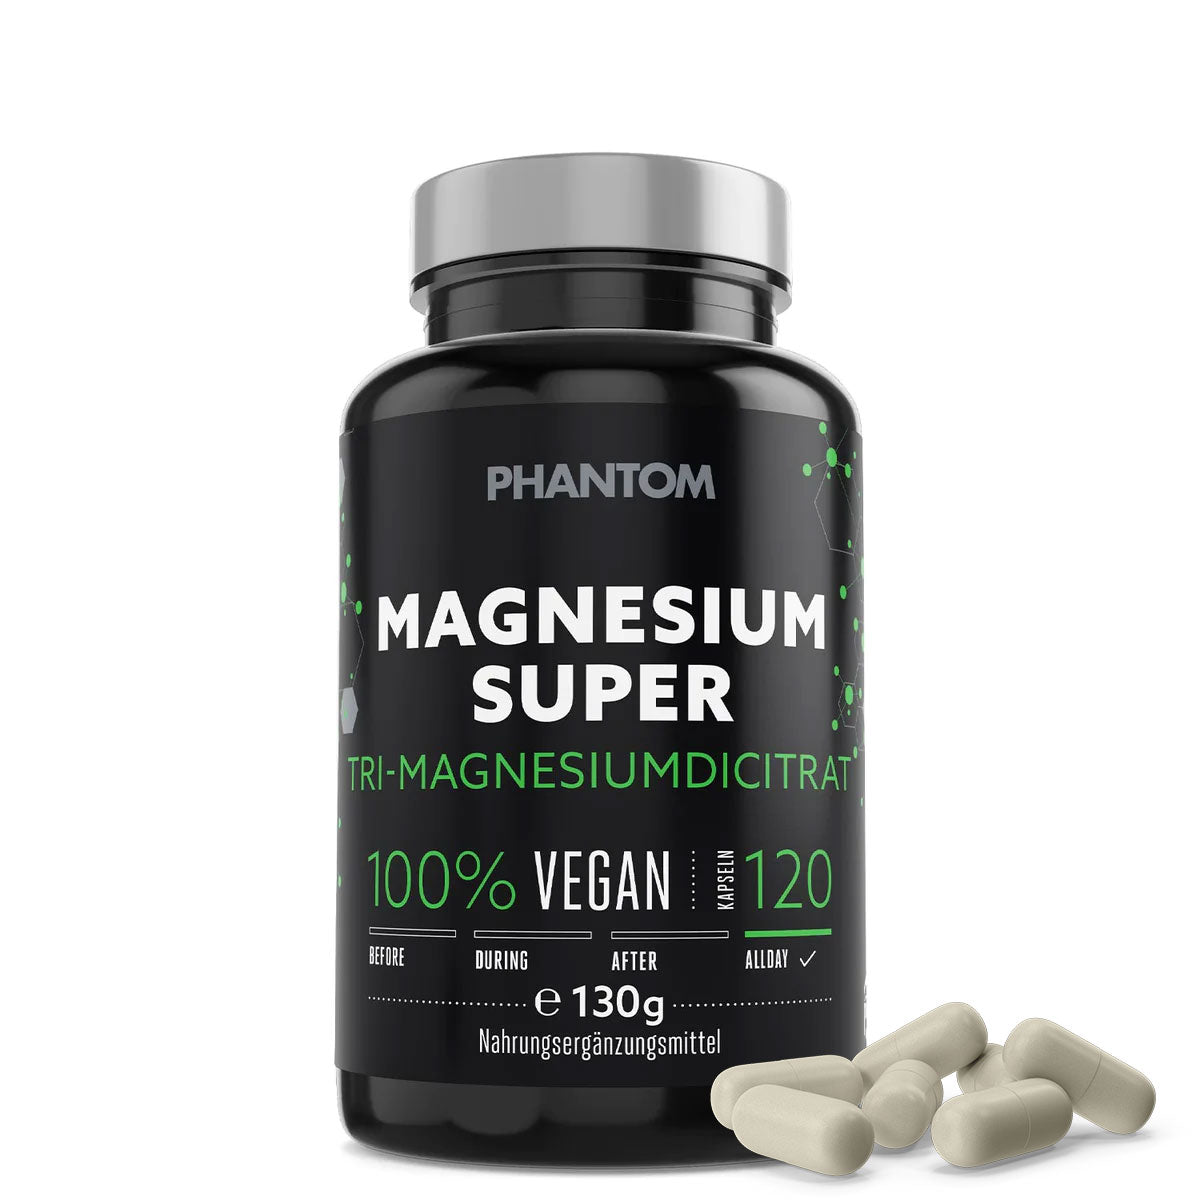 Phantom Magnesium Super kapszula a jobb regenerációért a harcművészetekben.